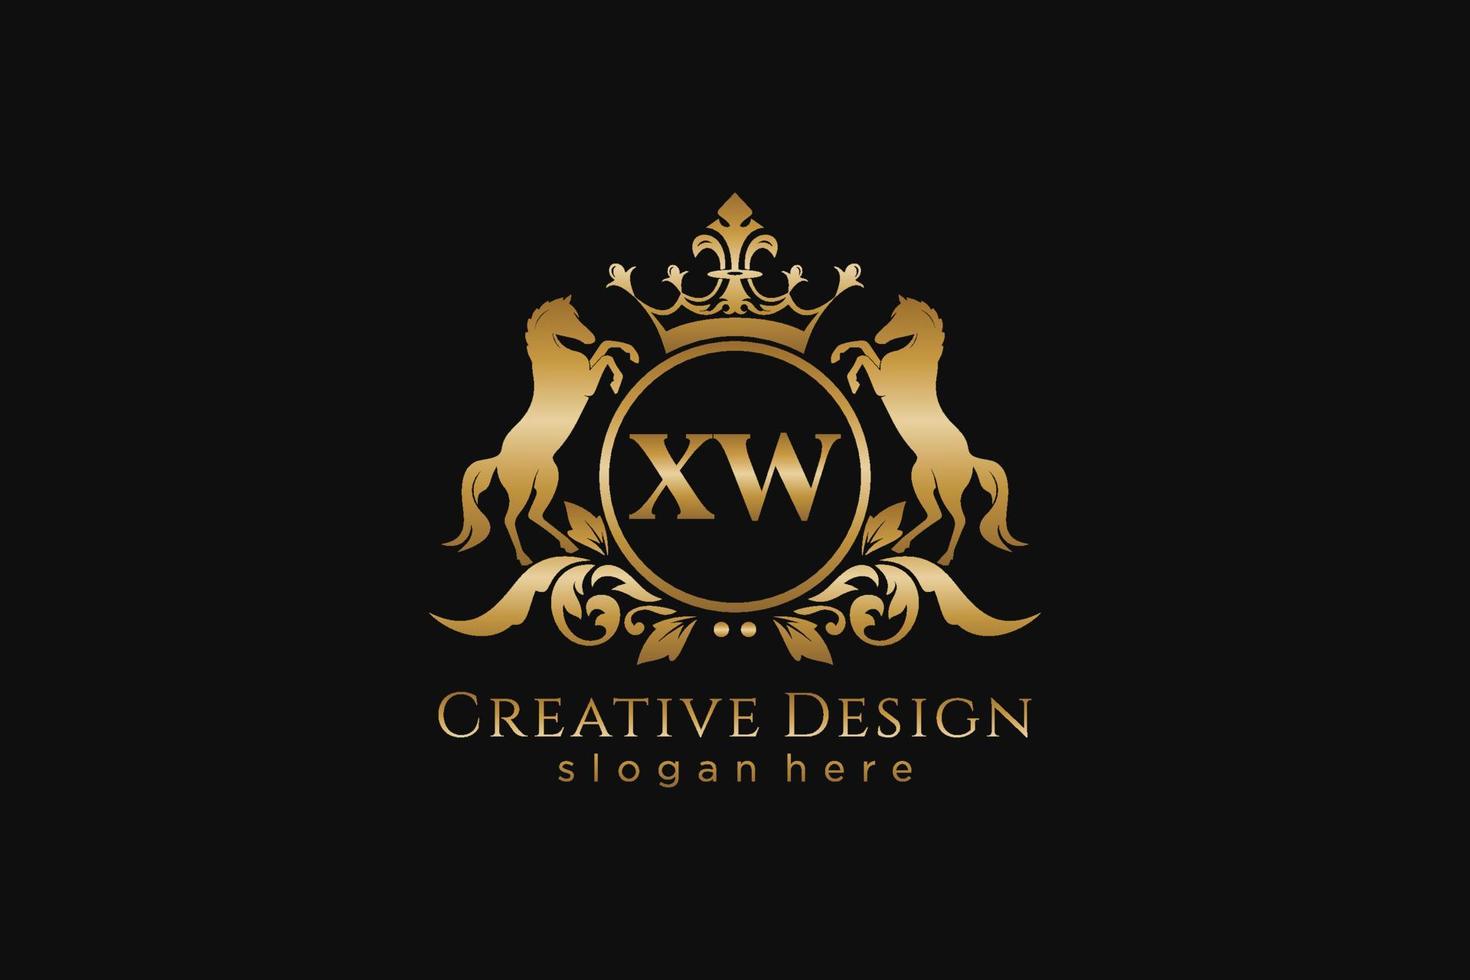 cresta dorada retro xw inicial con círculo y dos caballos, plantilla de insignia con pergaminos y corona real, perfecta para proyectos de marca de lujo vector